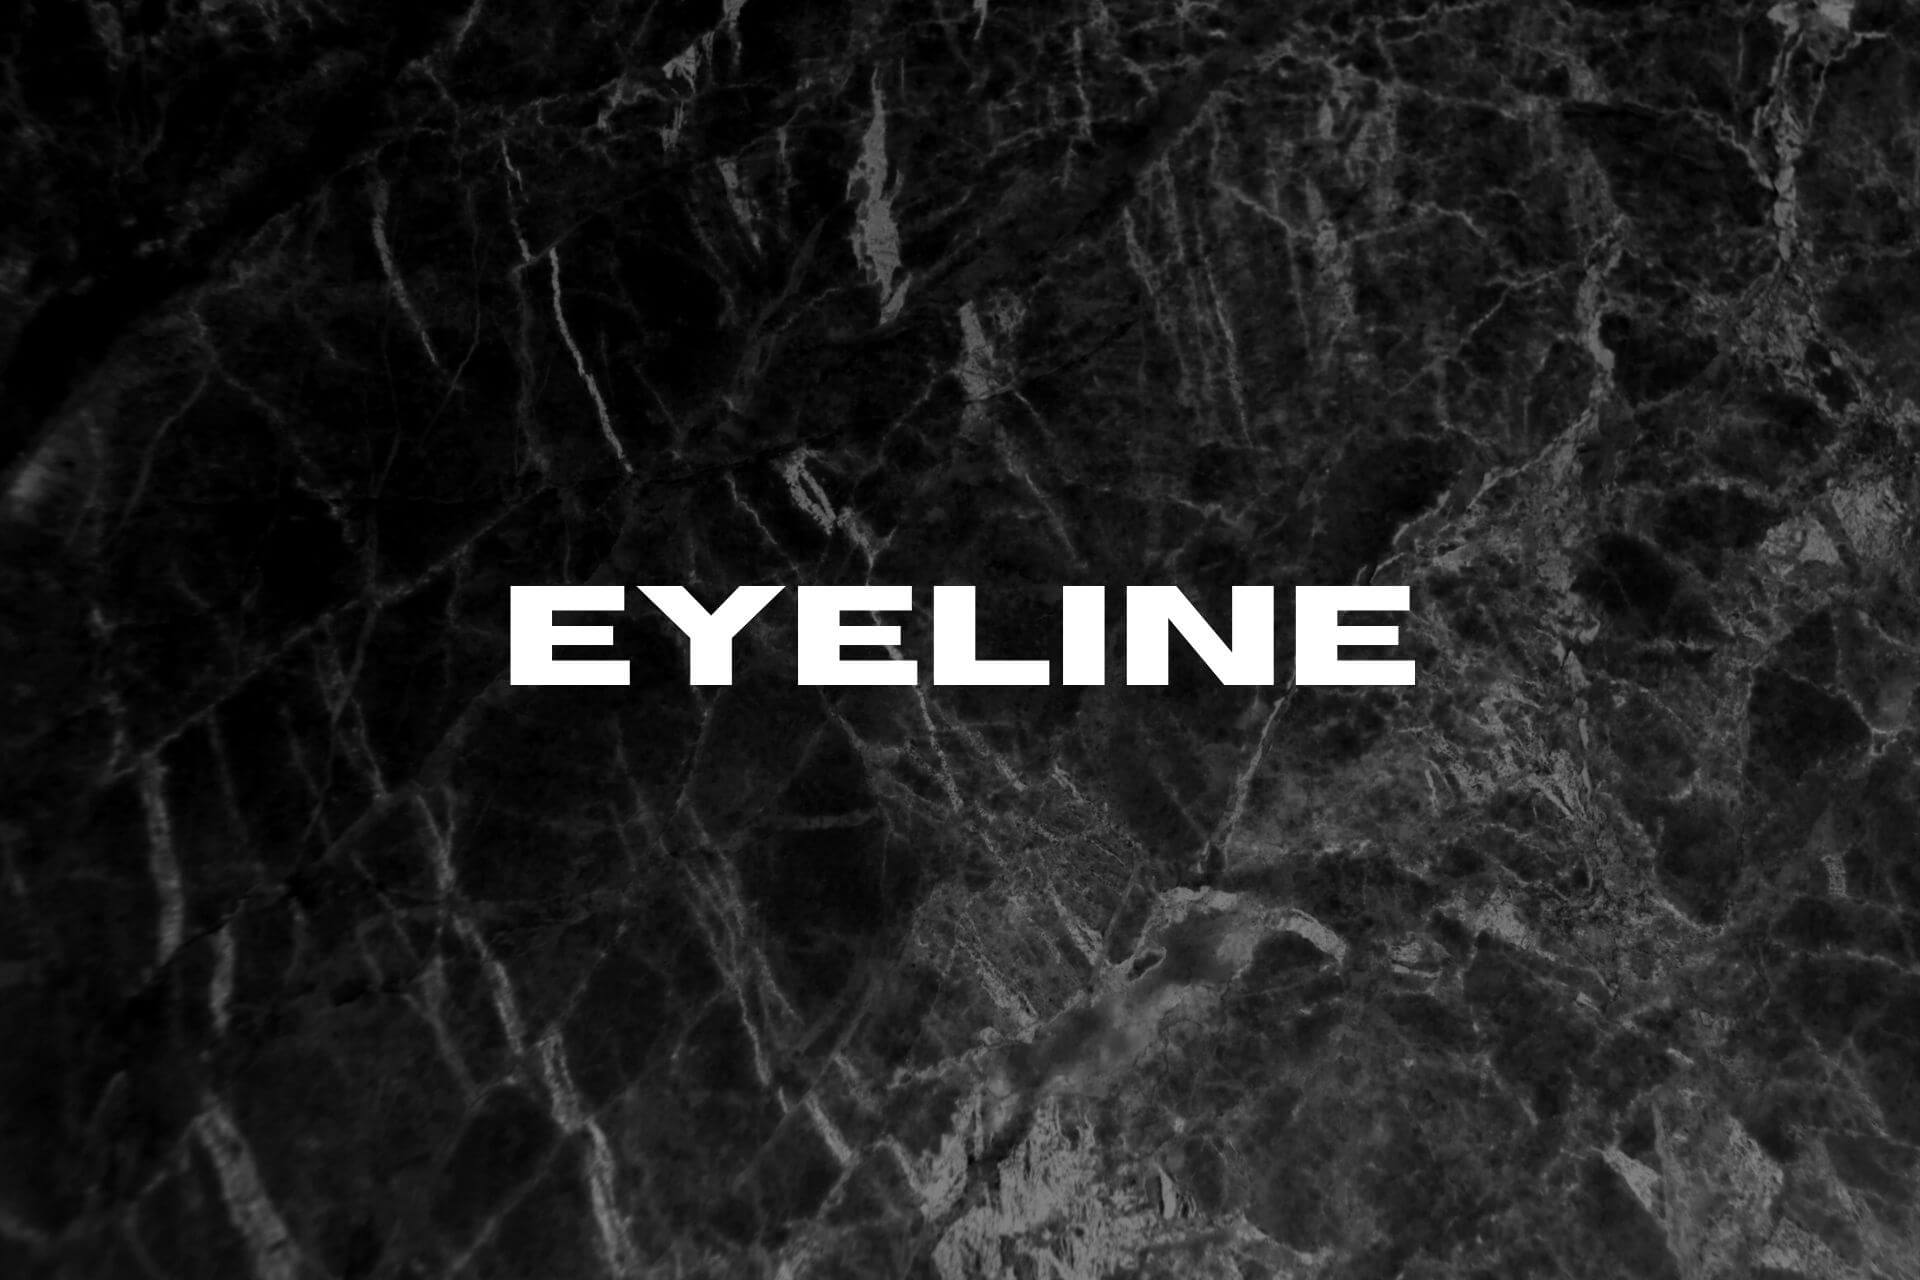 eyeline video surveillance software crack